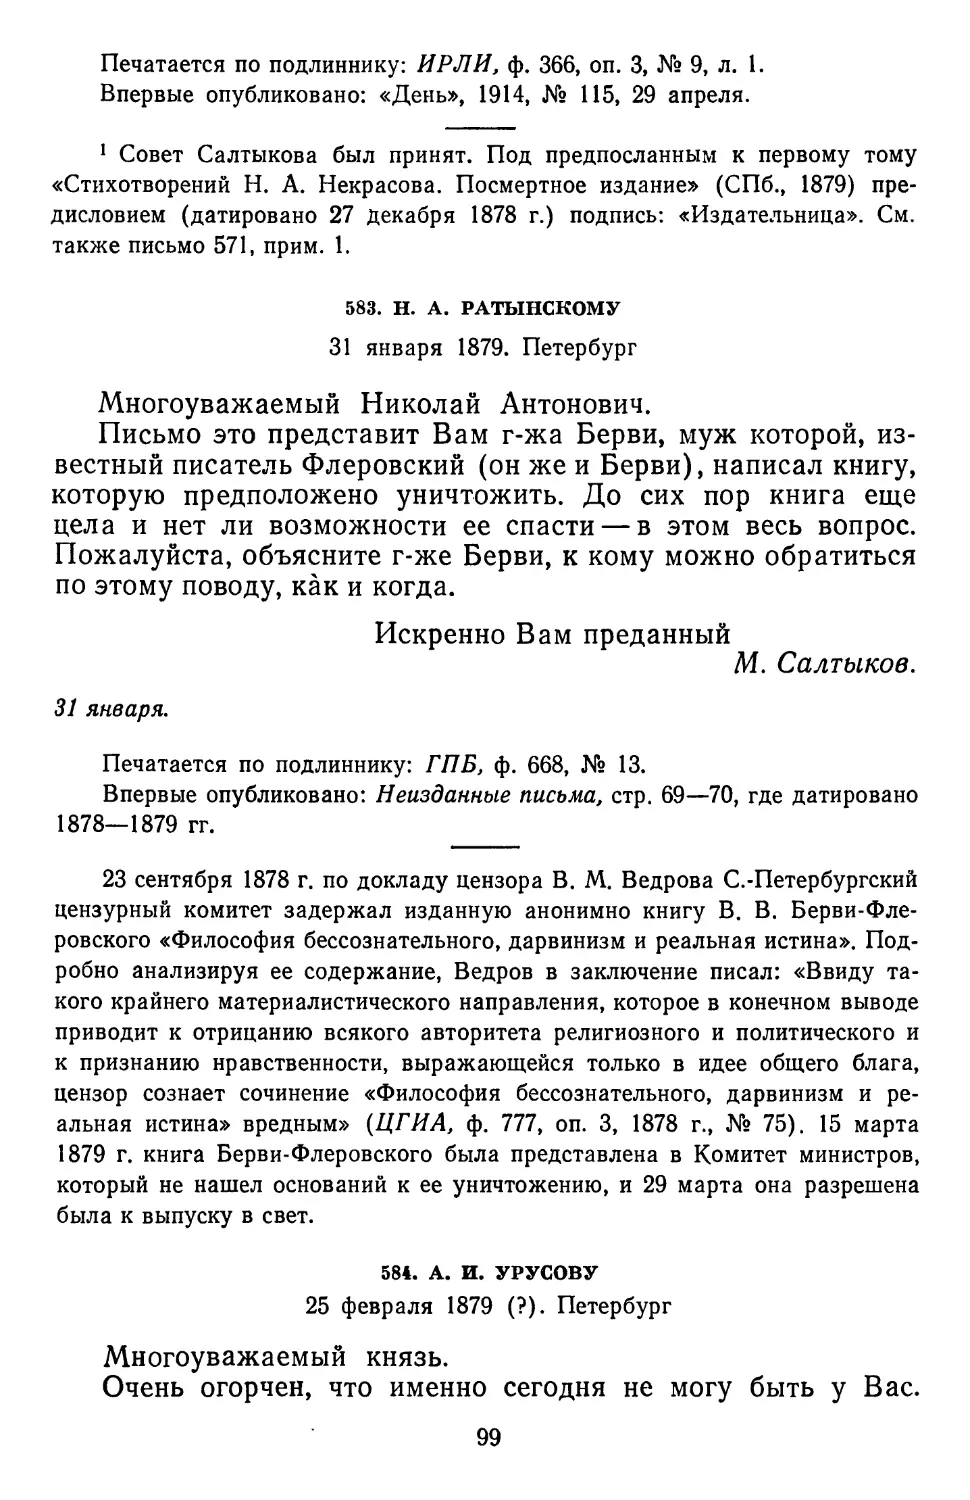 583.Н.А. Ратынскому. 81 января 1879. Петербург